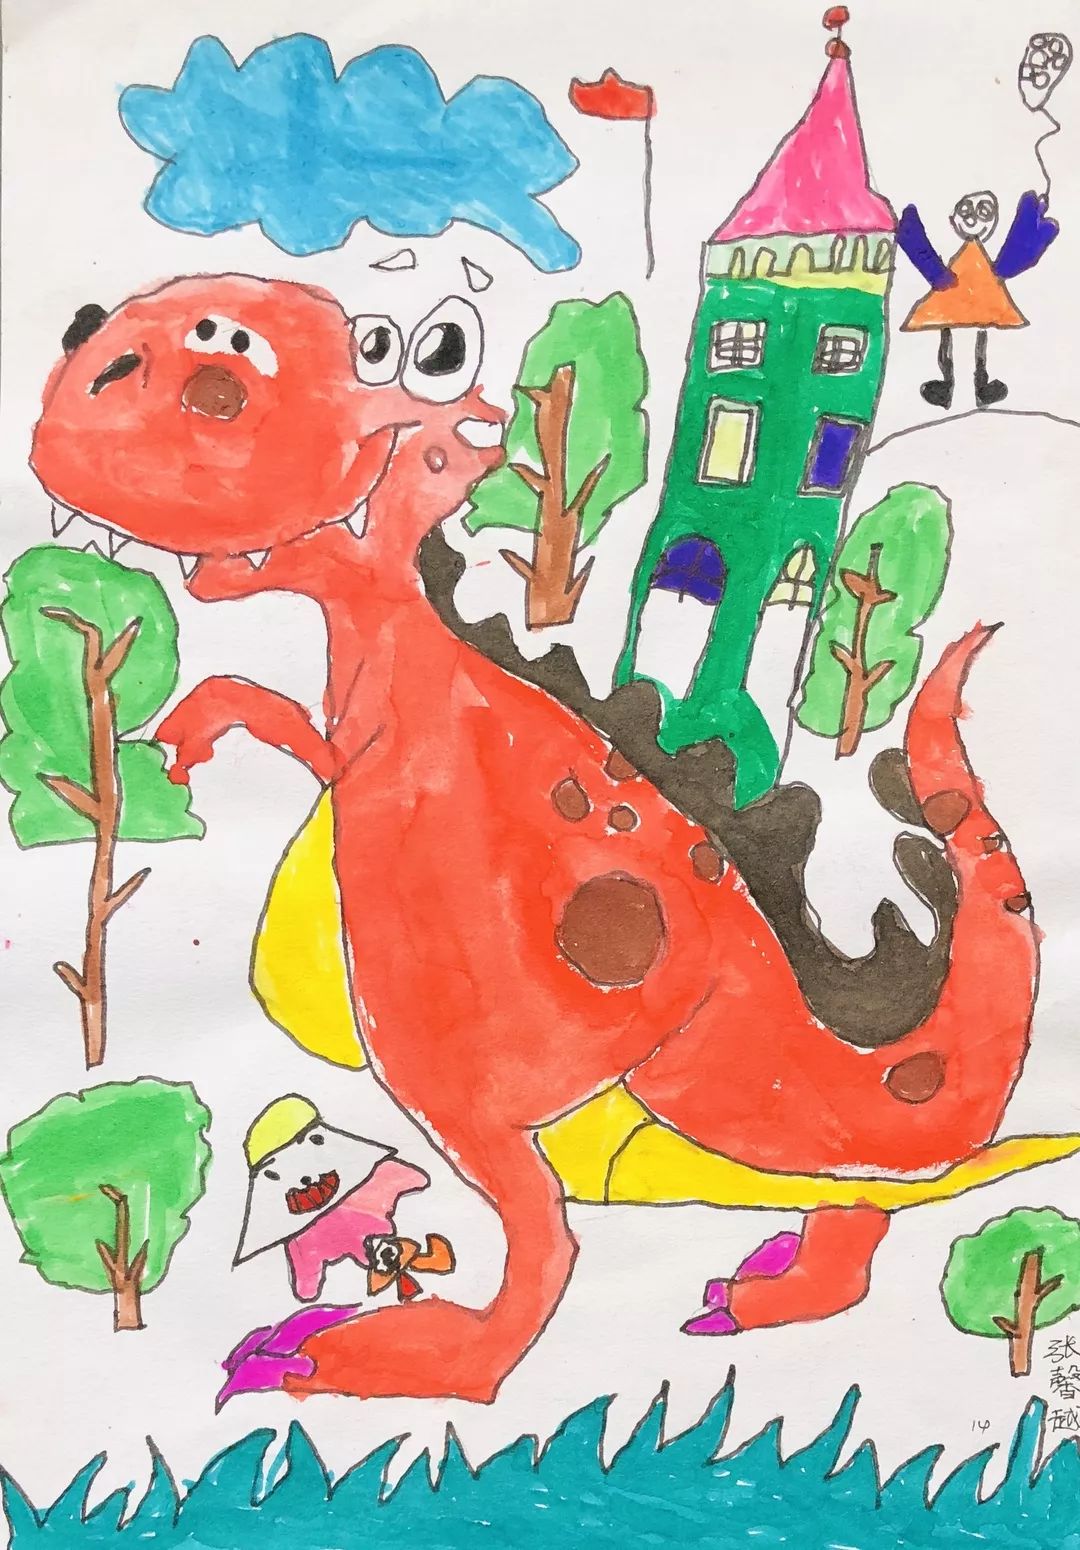 可爱卡通侏罗纪恐龙世界漫画儿童油画床头画所属类别:儿童房背景墙